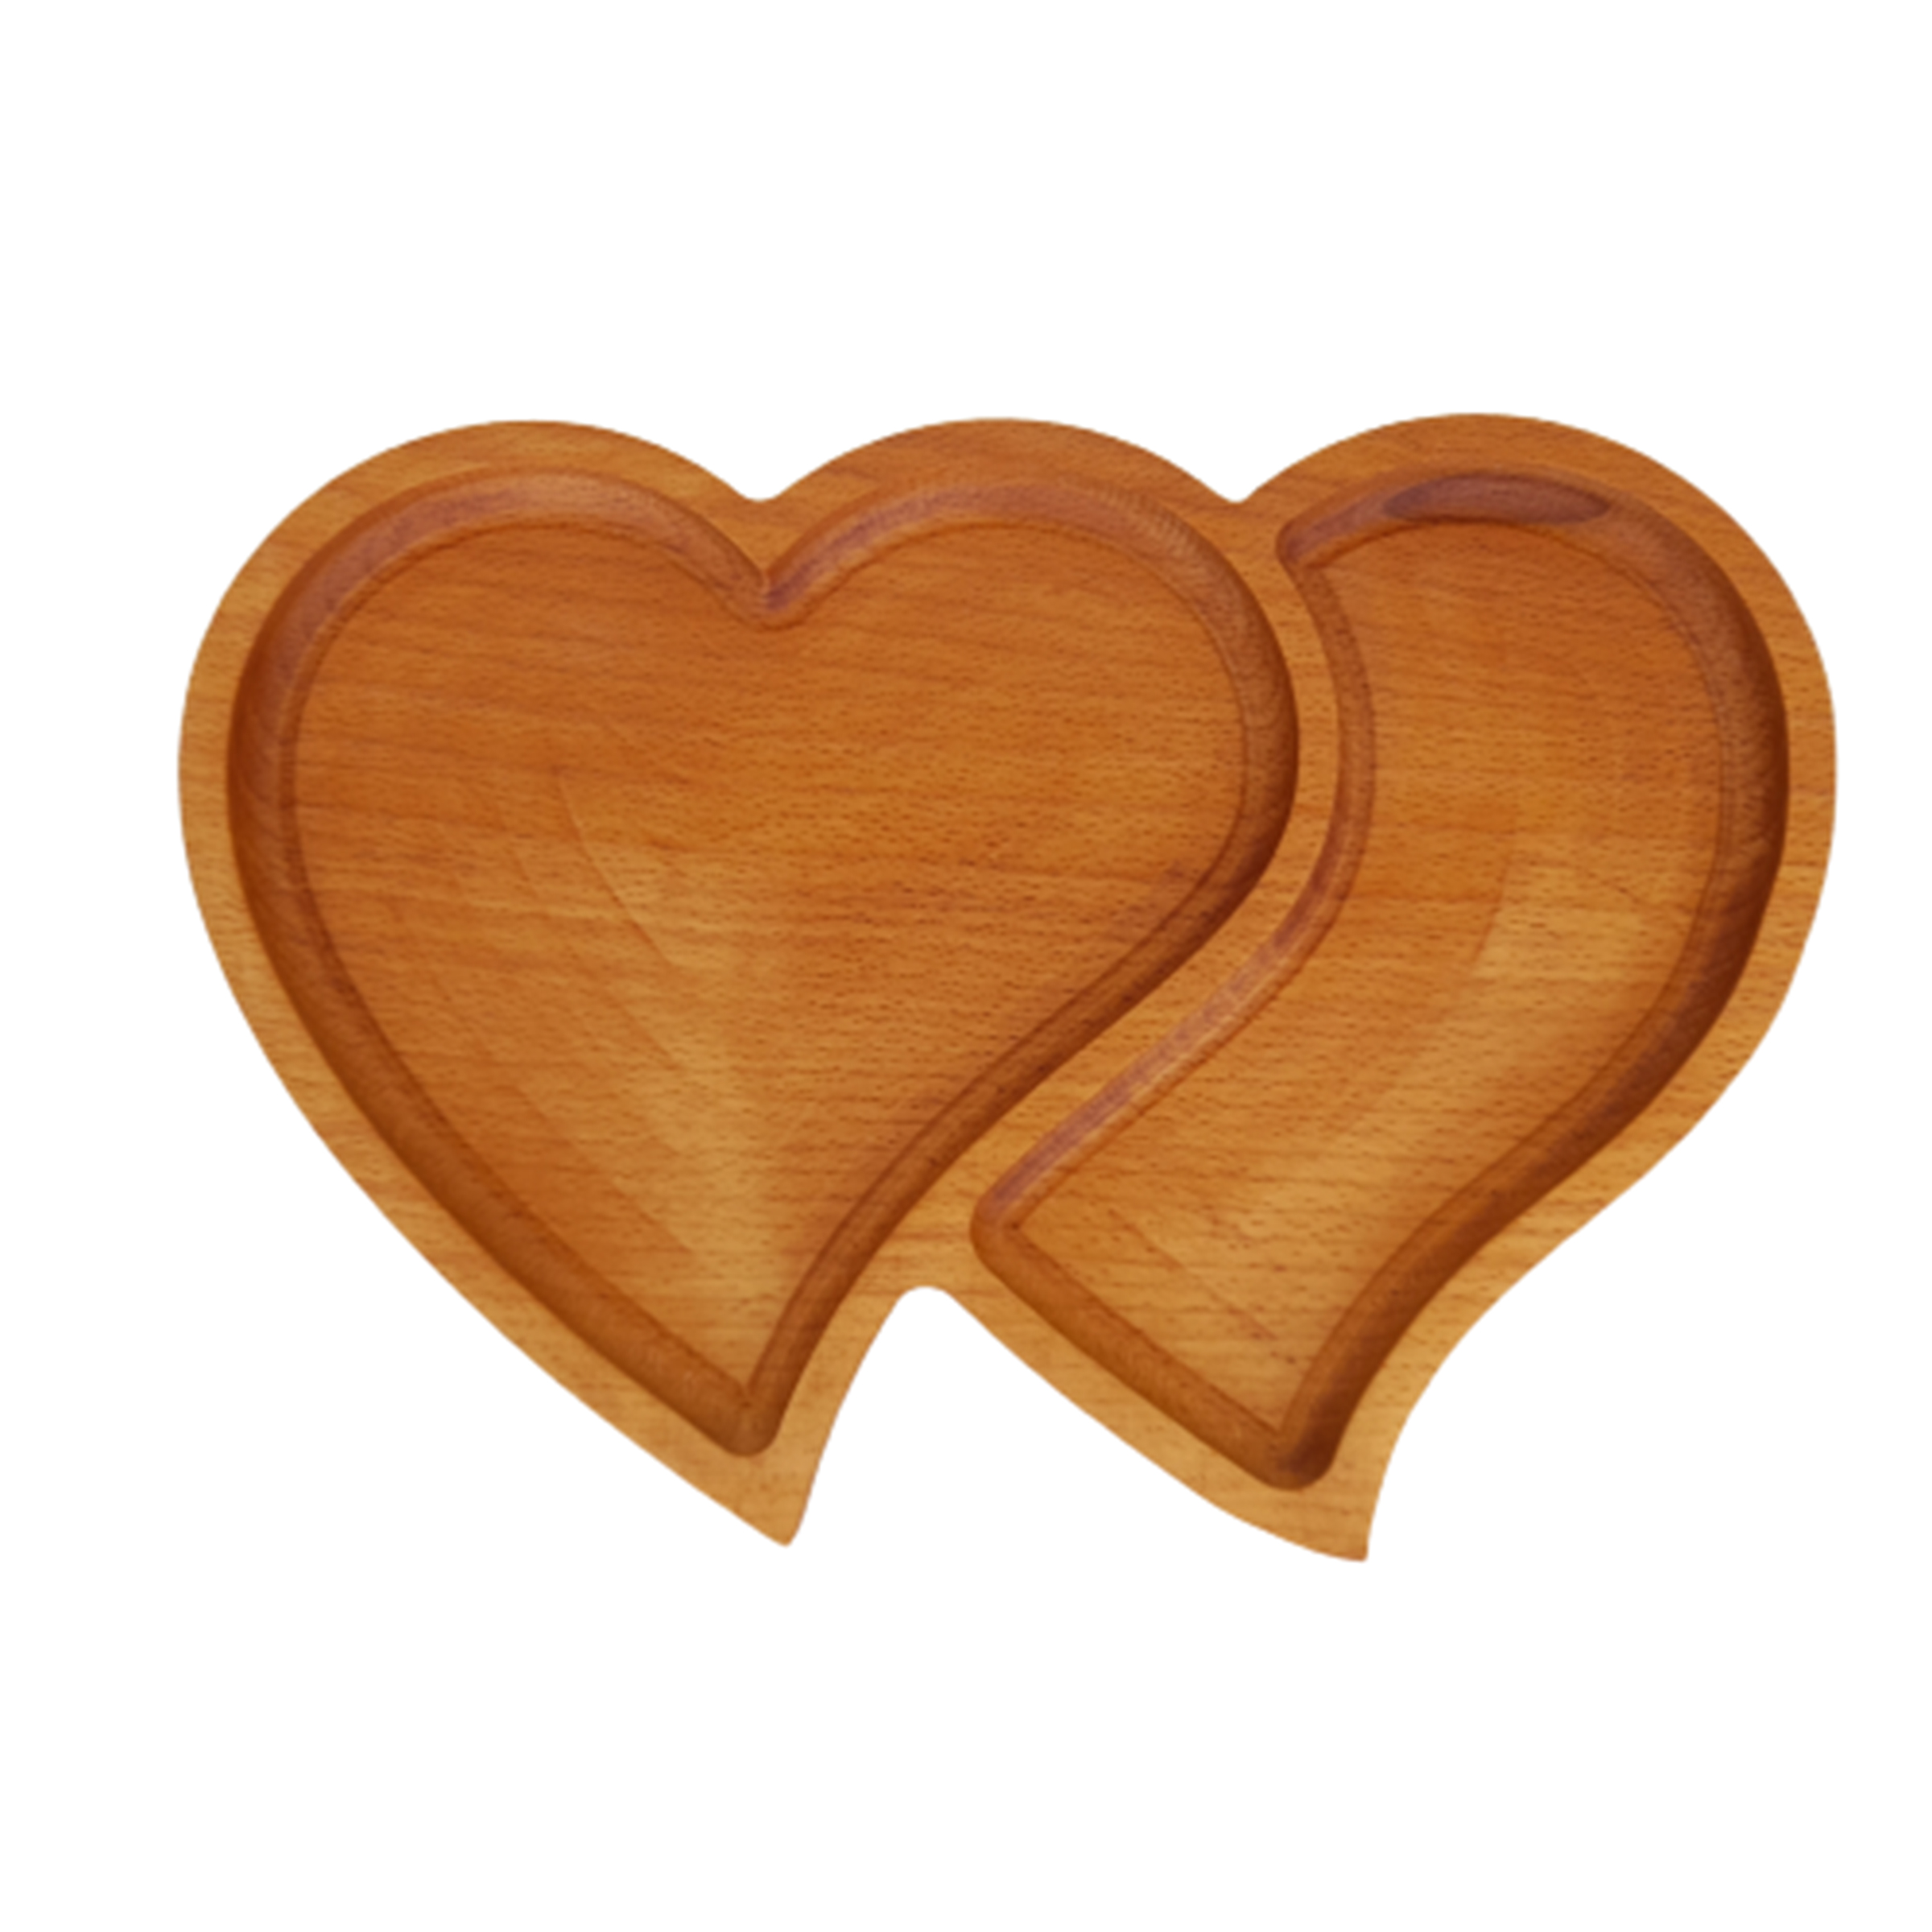 ظرف سرو چوبی  مدل قلب دوقلو